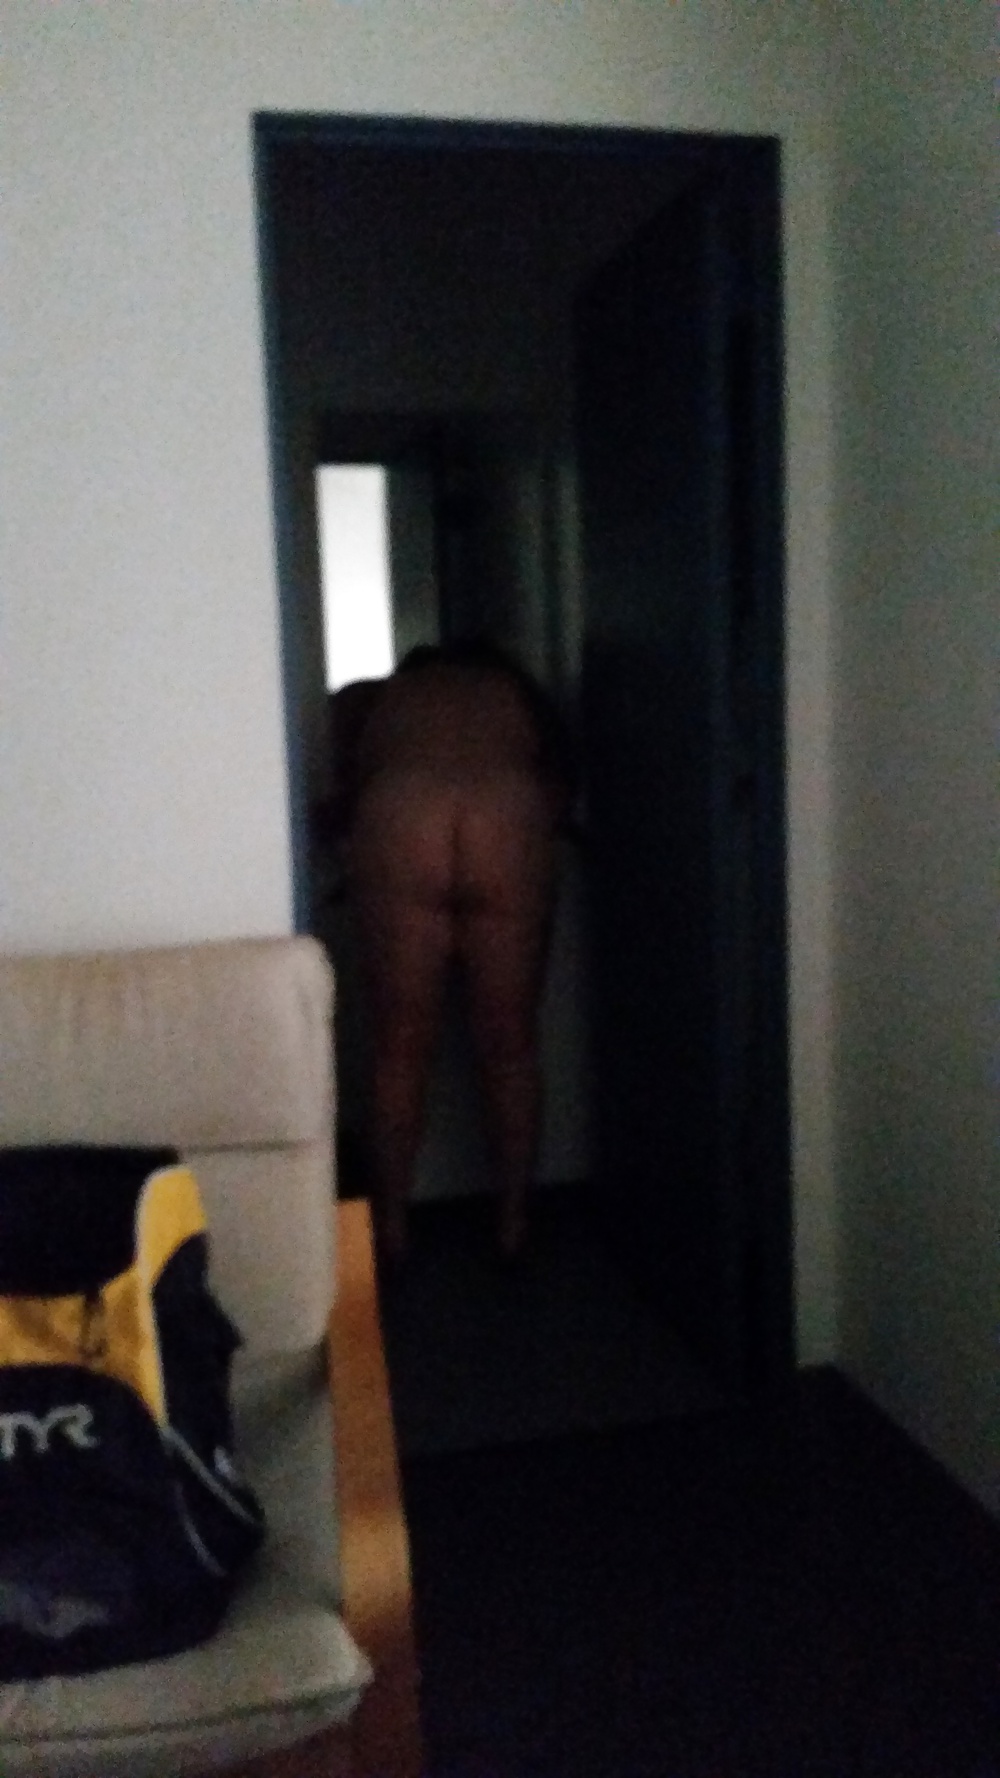 Sex wife's ass image